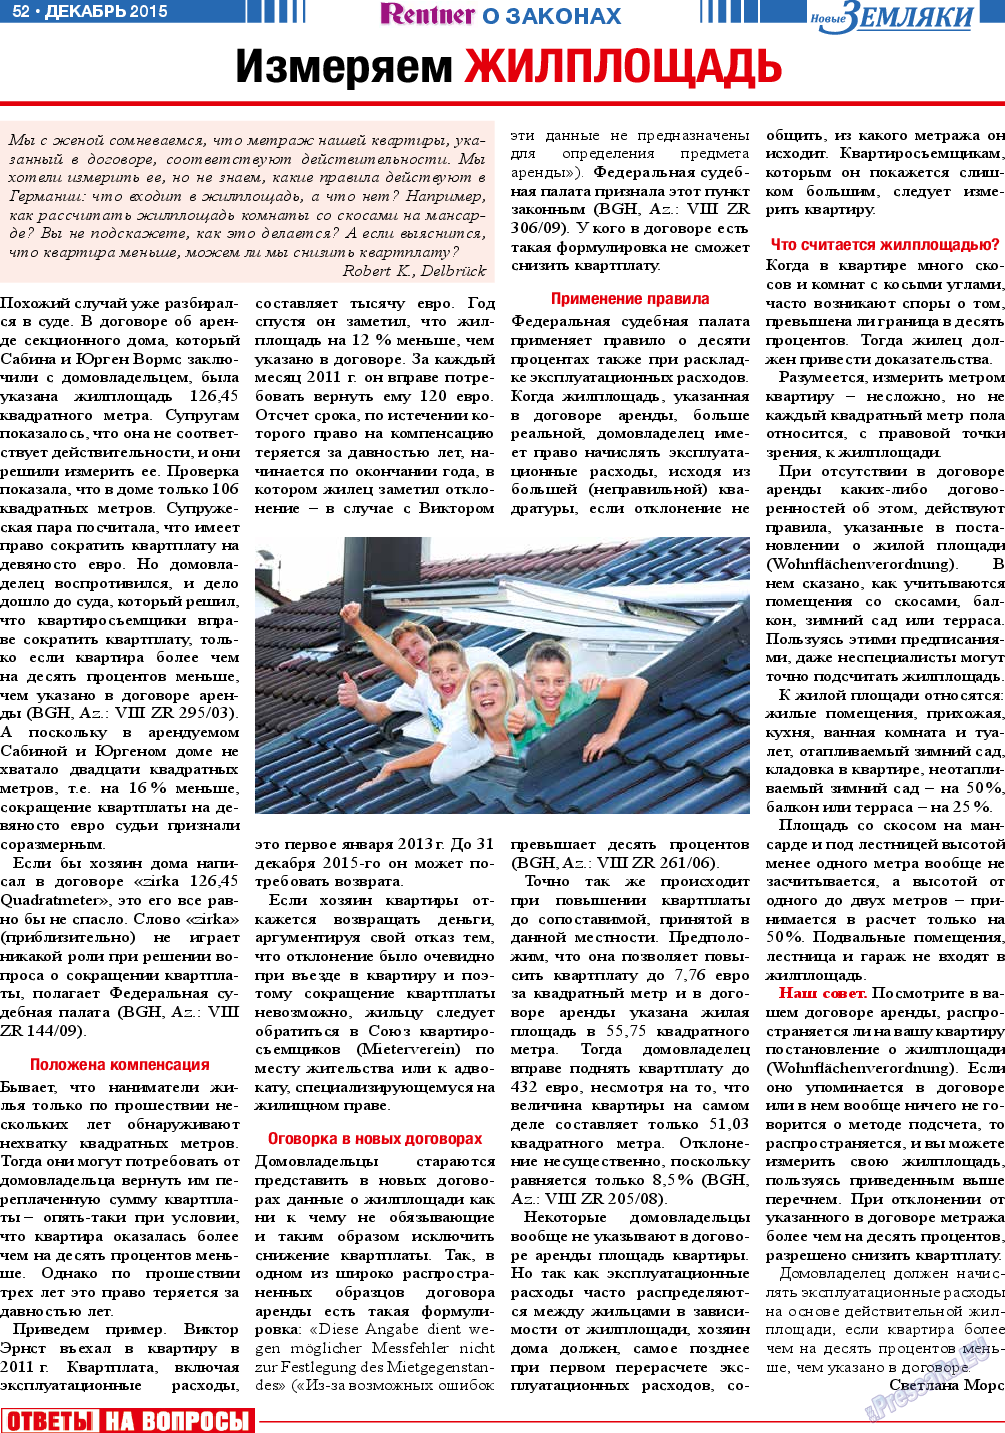 Новые Земляки, газета. 2015 №12 стр.52